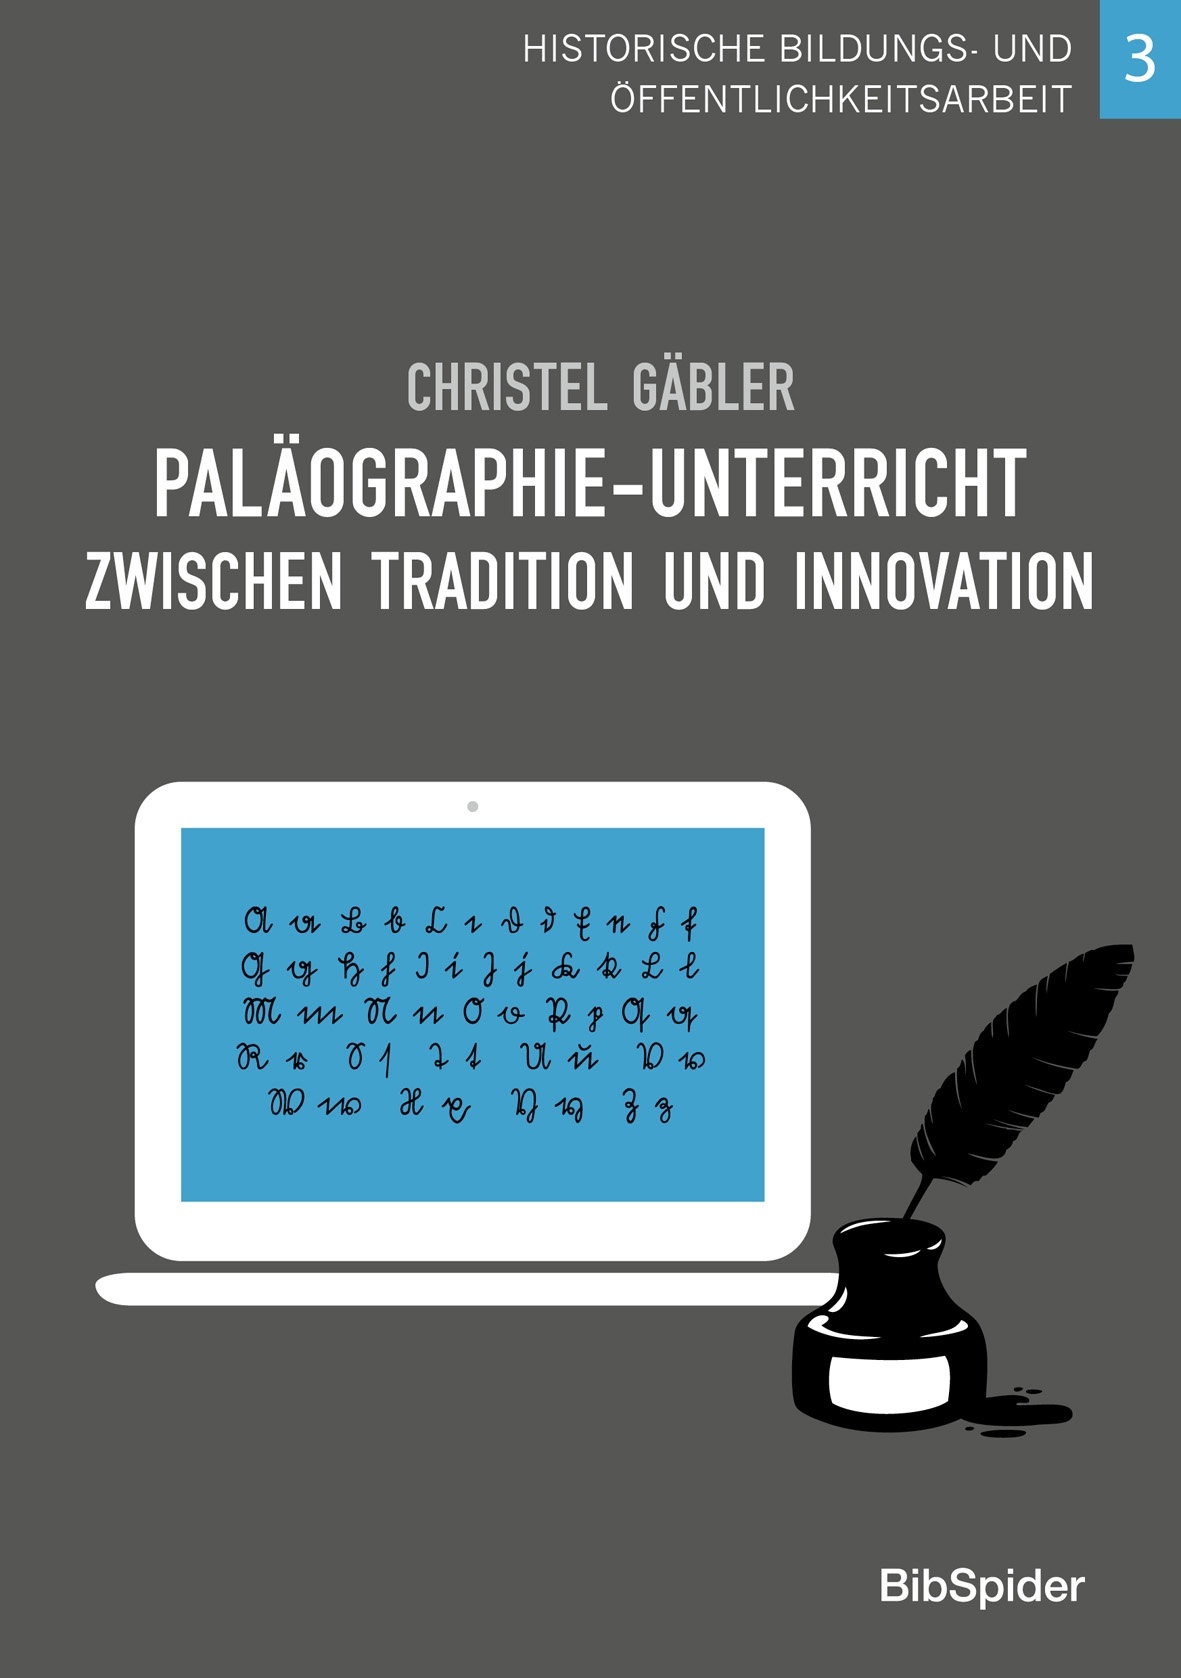  Paläographie-Unterricht  zwischen Tradition und Innovation